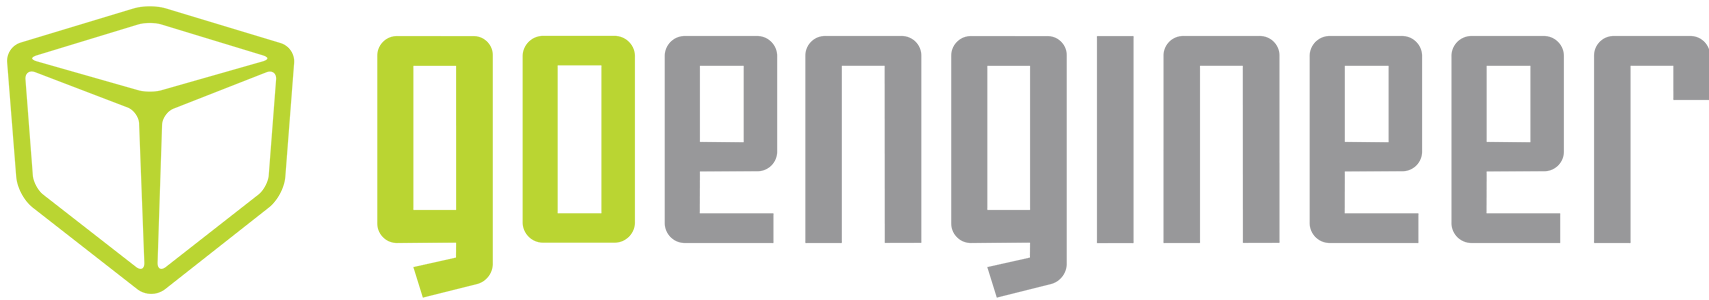 goengineer logo horizontal